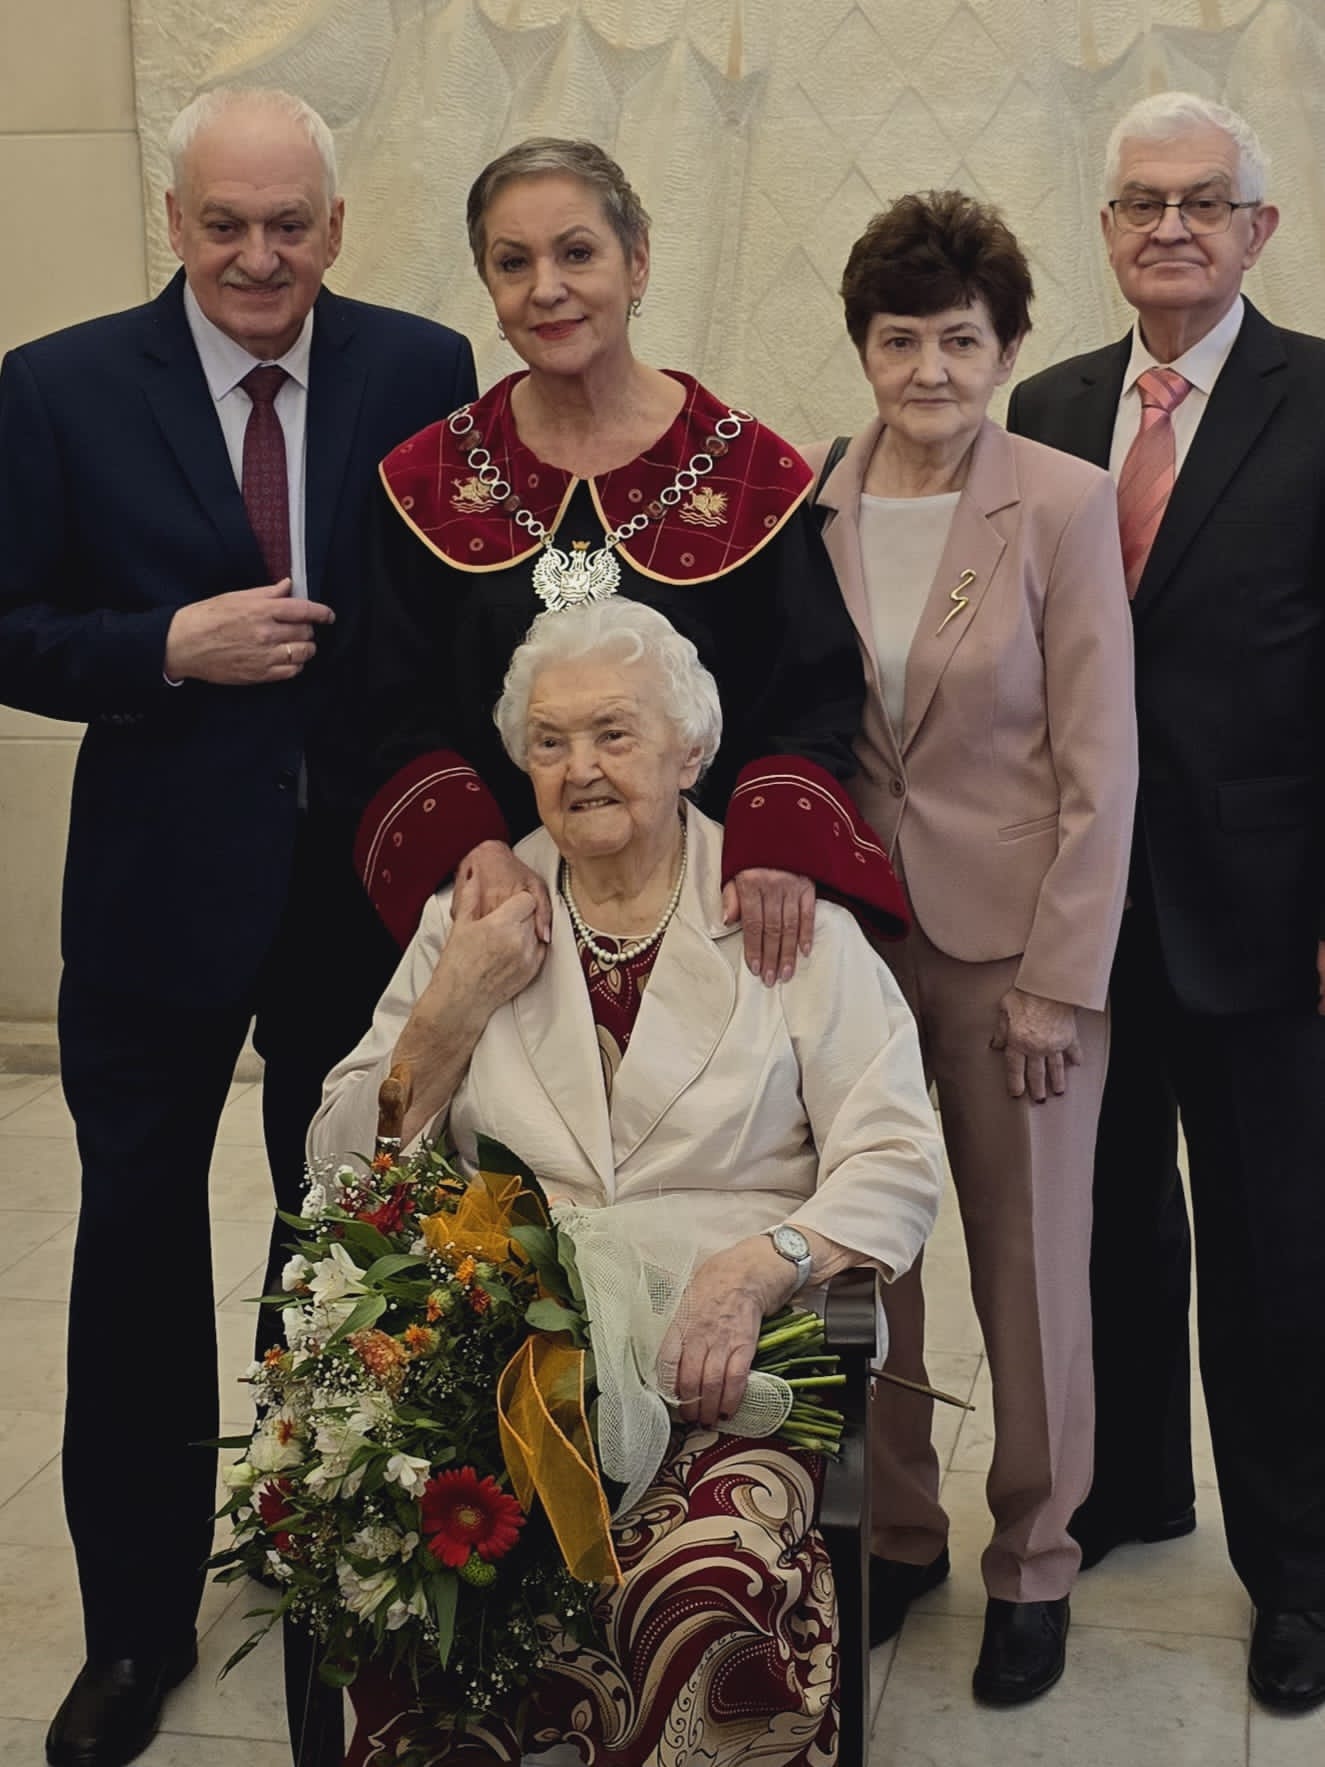 Jubilatka trzymająca kwiaty, Pani Prezydent oraz rodzina Jubilatki - 3 osoby; łącznie na zdjęciu 5 osób